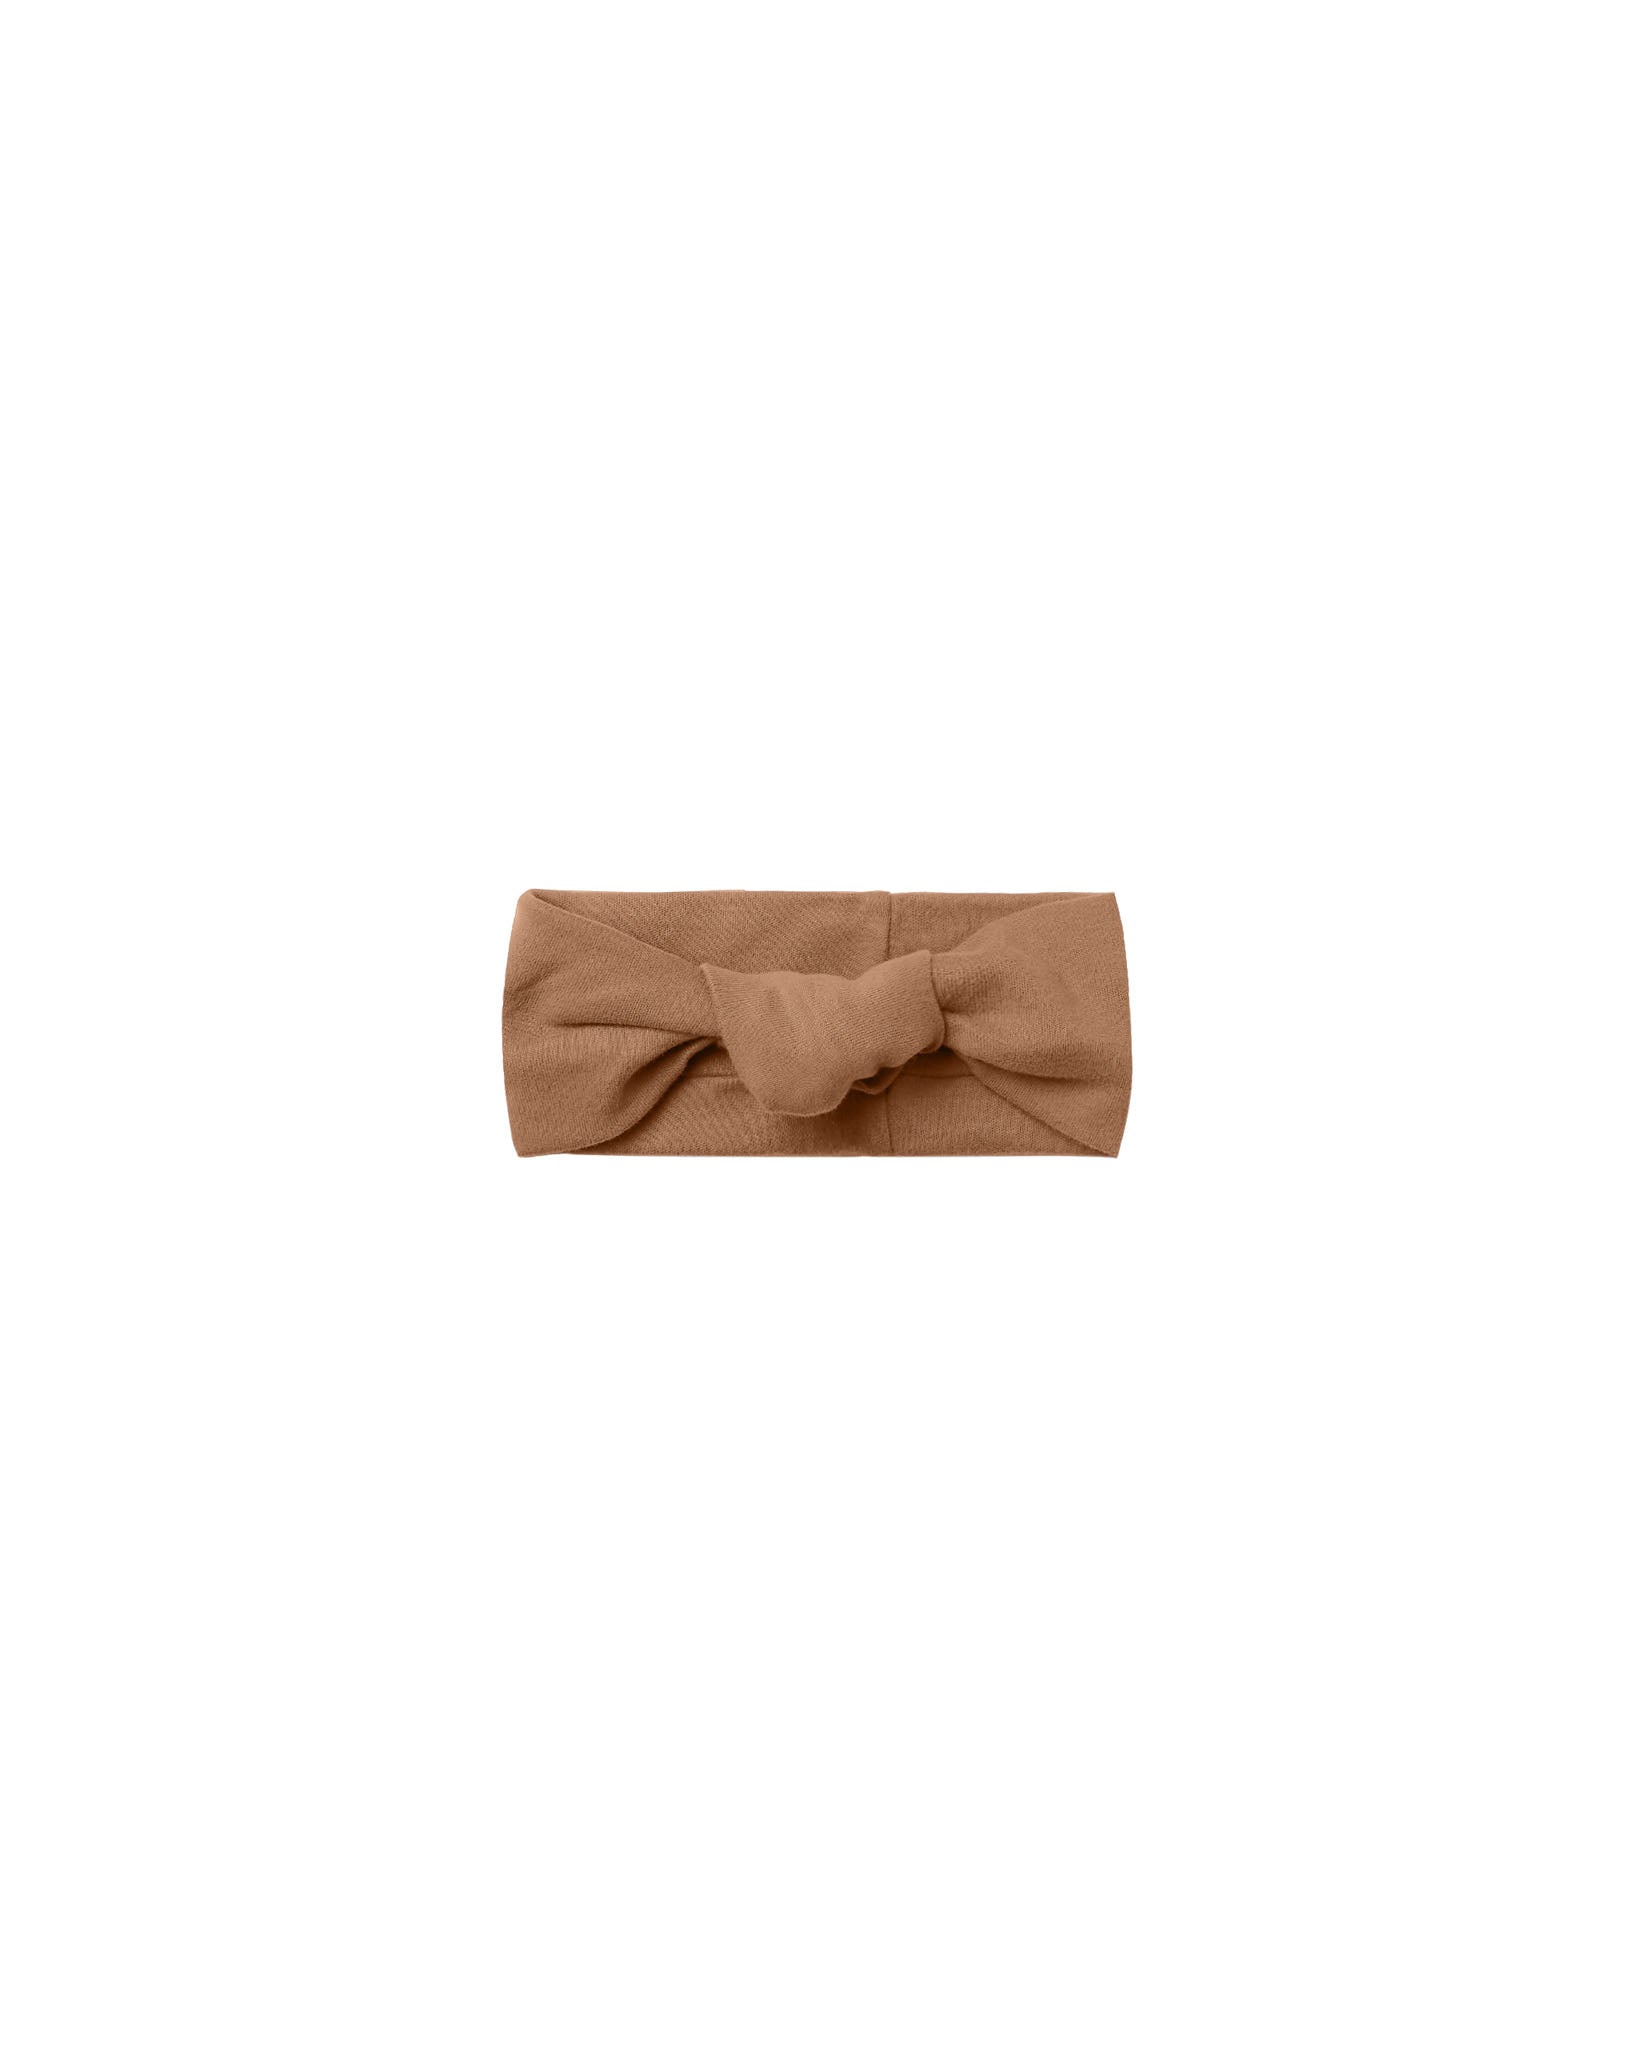 Knotted Headband (cinnamon)